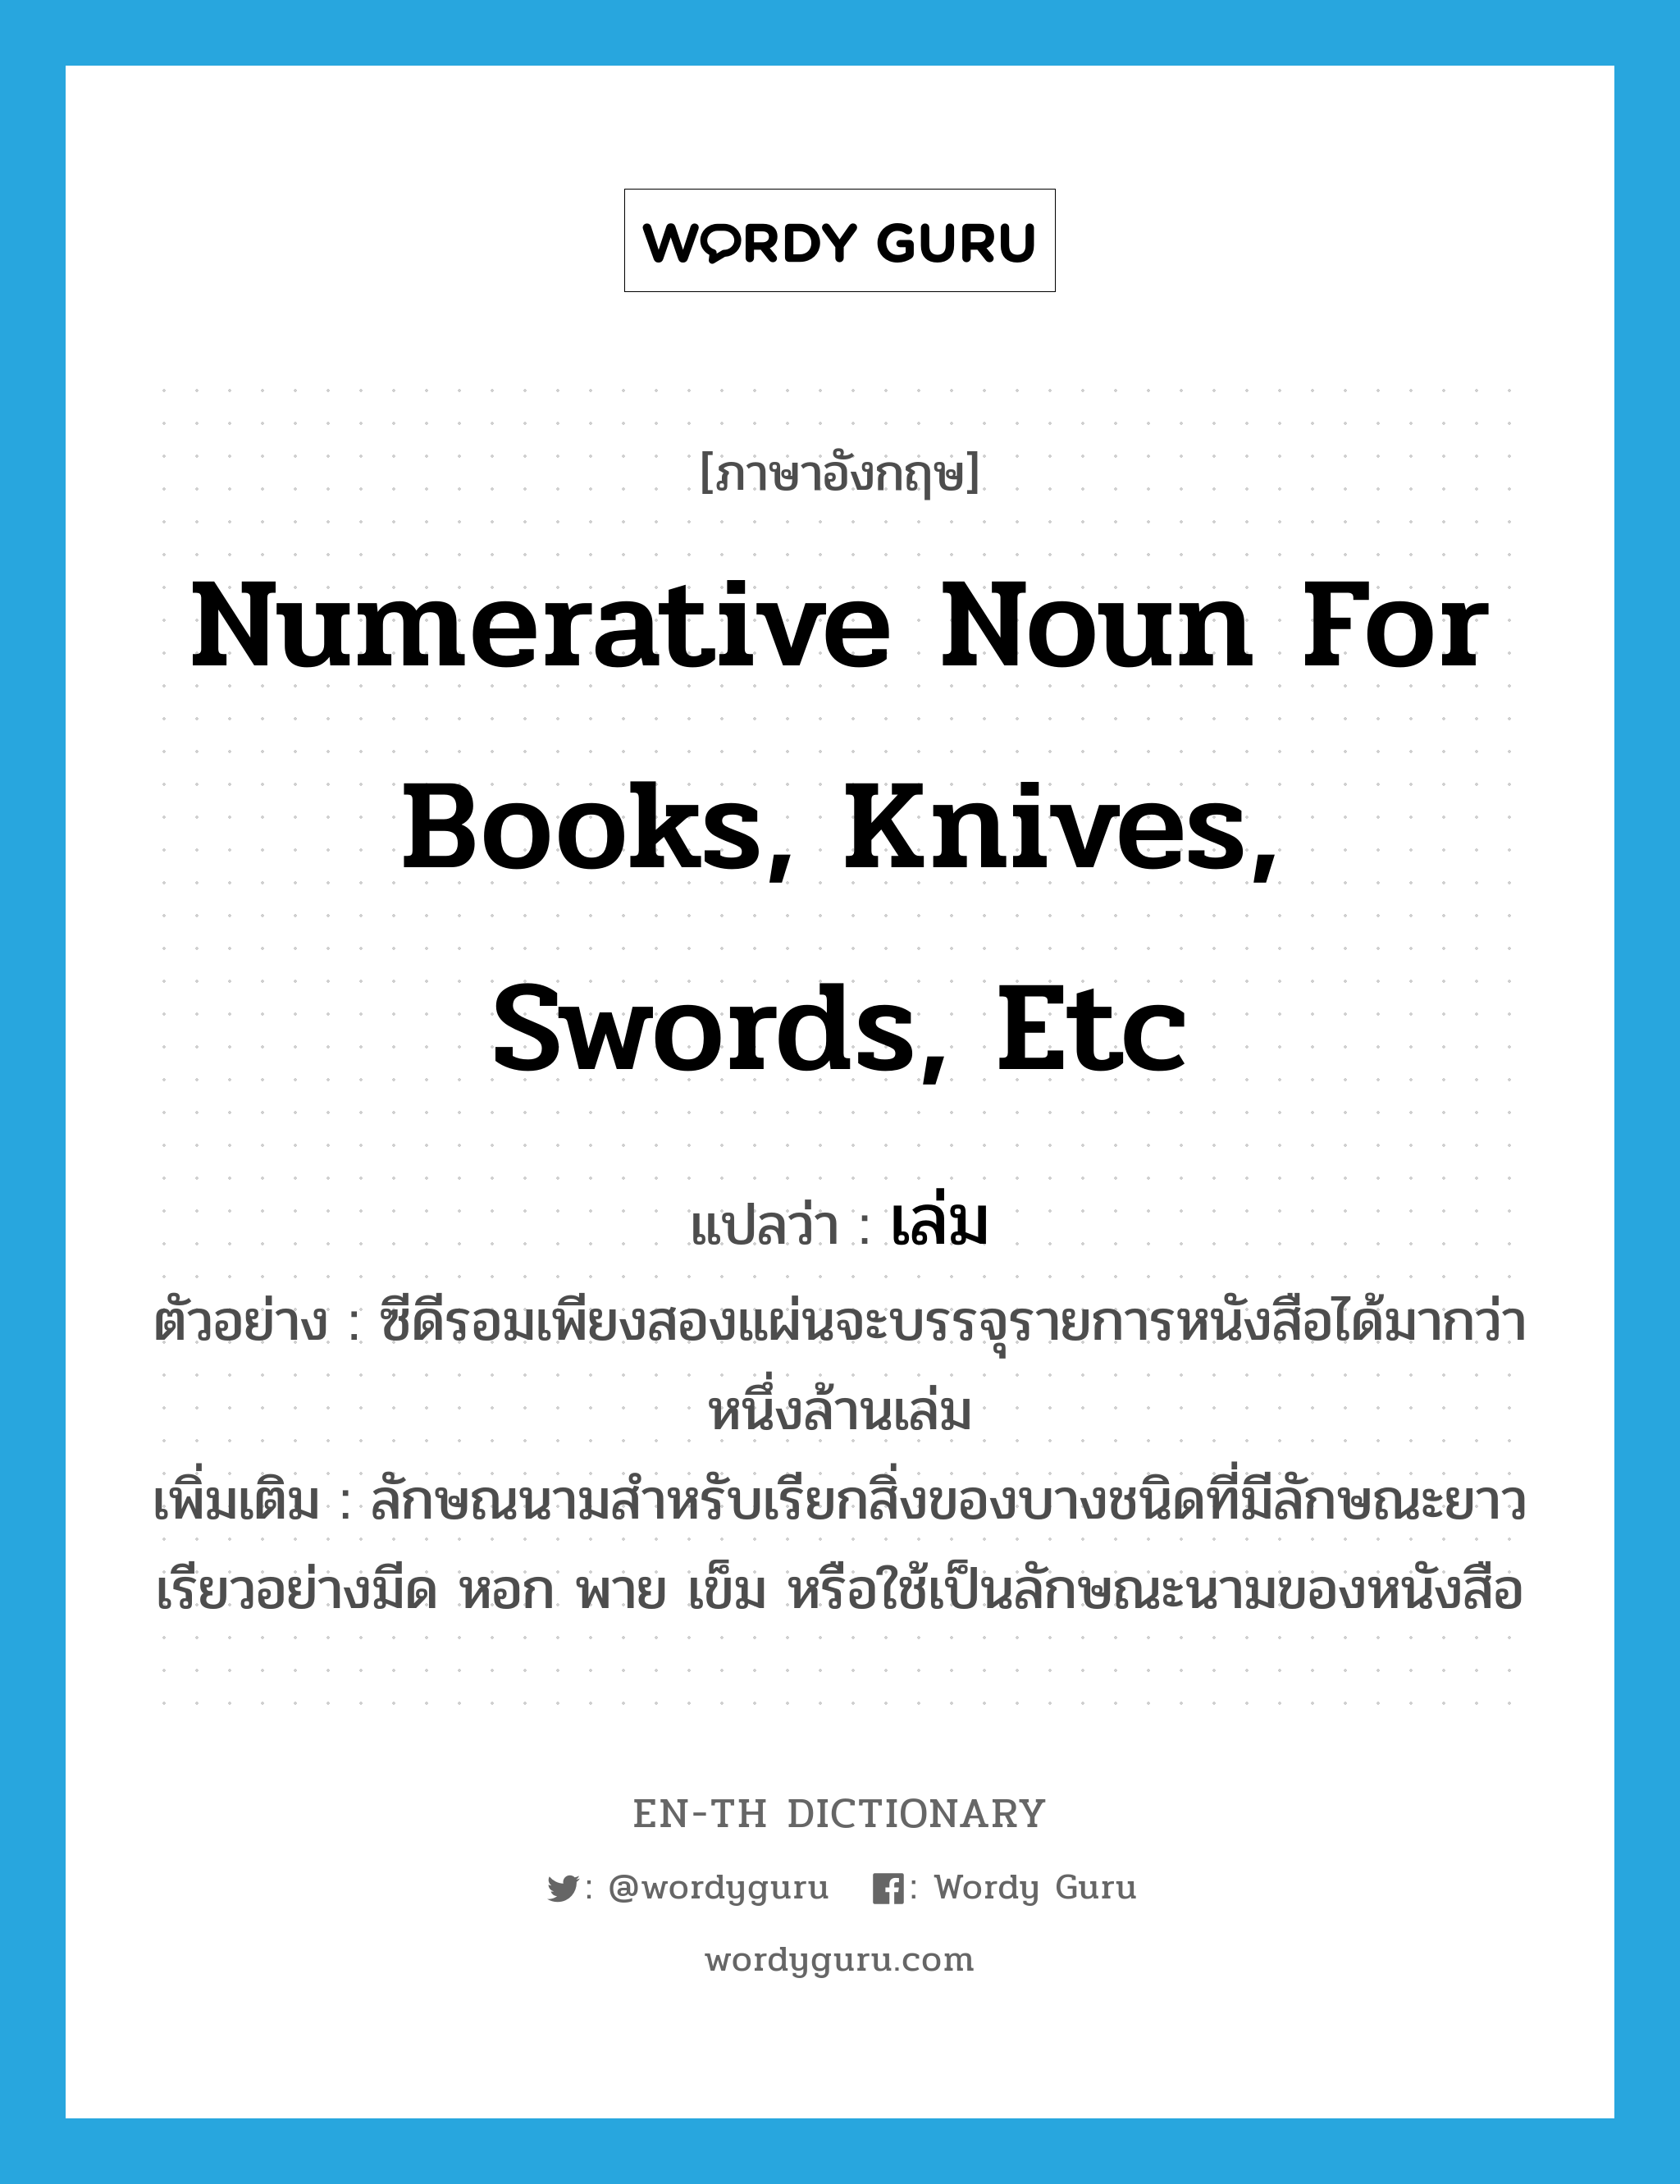 numerative noun for books, knives, swords, etc แปลว่า? คำศัพท์ในกลุ่มประเภท CLAS, คำศัพท์ภาษาอังกฤษ numerative noun for books, knives, swords, etc แปลว่า เล่ม ประเภท CLAS ตัวอย่าง ซีดีรอมเพียงสองแผ่นจะบรรจุรายการหนังสือได้มากว่าหนึ่งล้านเล่ม เพิ่มเติม ลักษณนามสำหรับเรียกสิ่งของบางชนิดที่มีลักษณะยาวเรียวอย่างมีด หอก พาย เข็ม หรือใช้เป็นลักษณะนามของหนังสือ หมวด CLAS